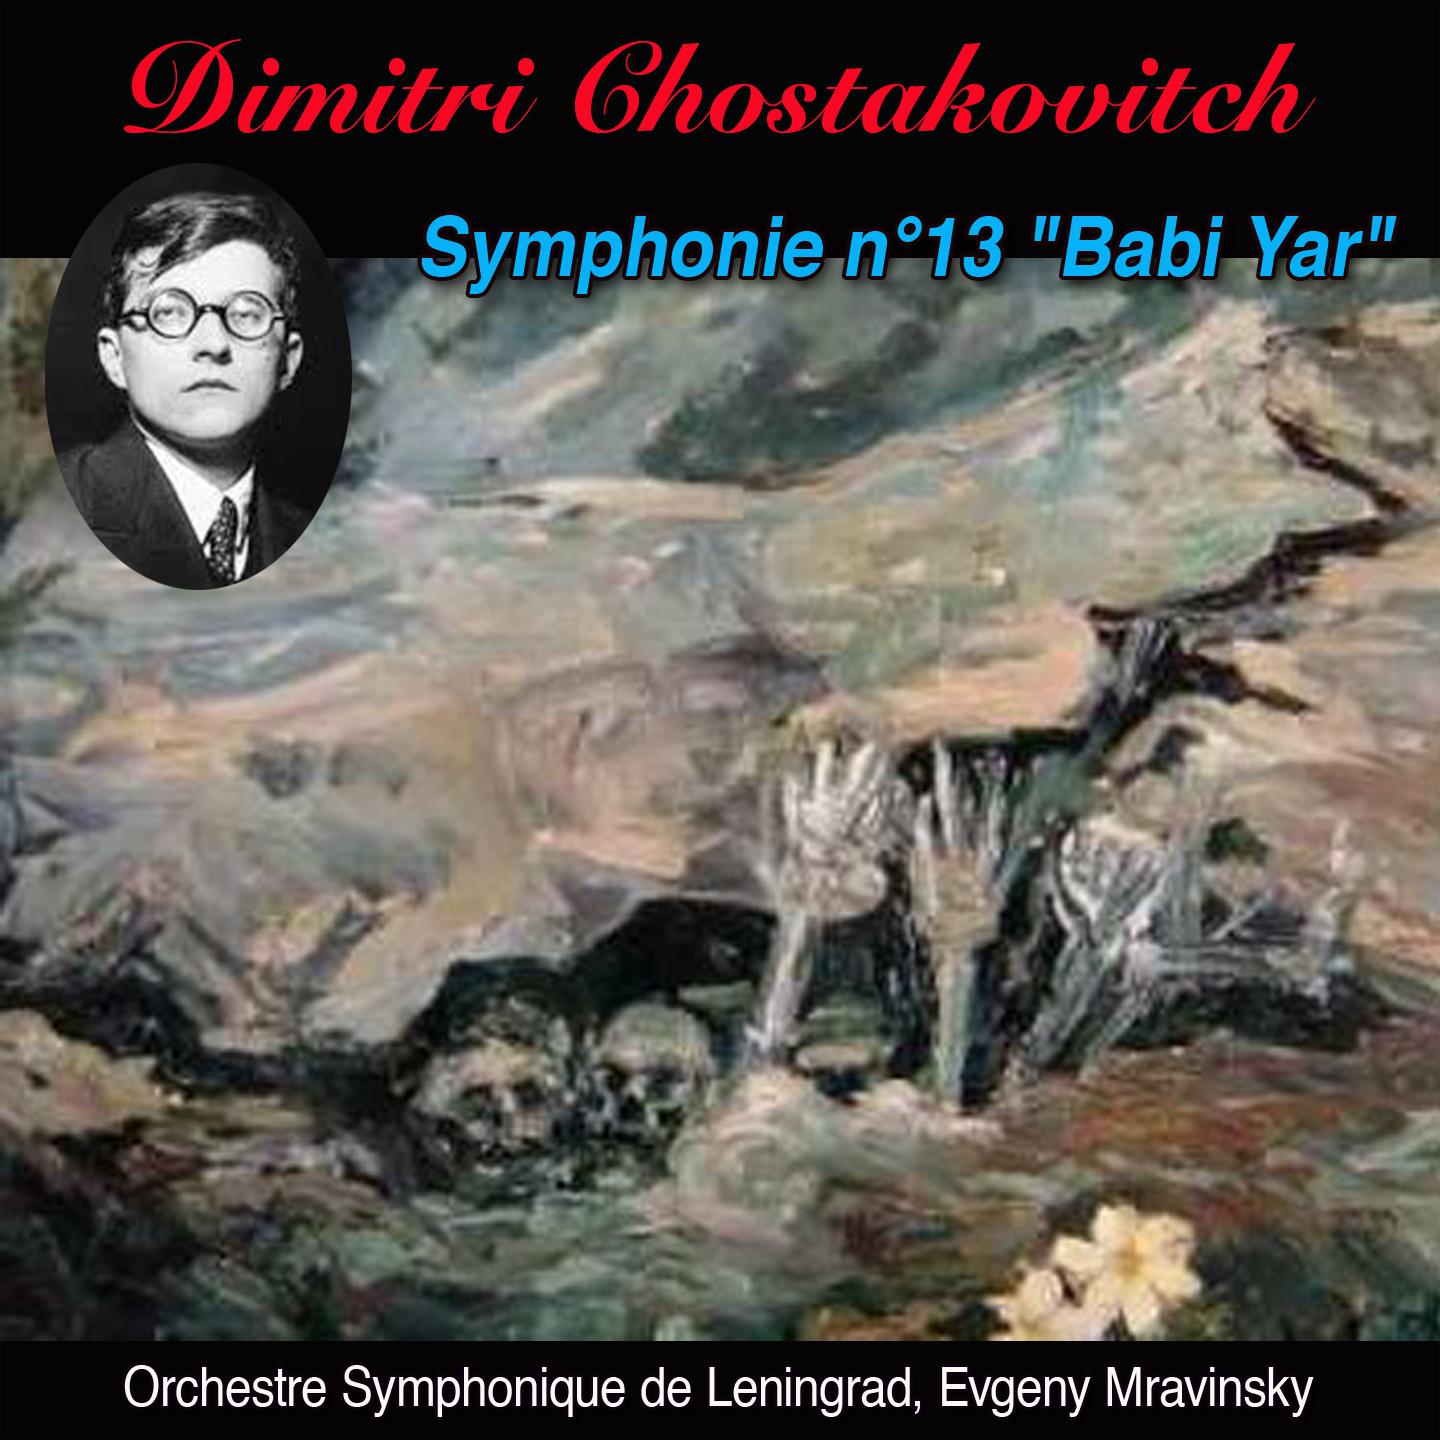 Babi yar adagio (Symphonie n° 13 op. 113 "Babi yar")